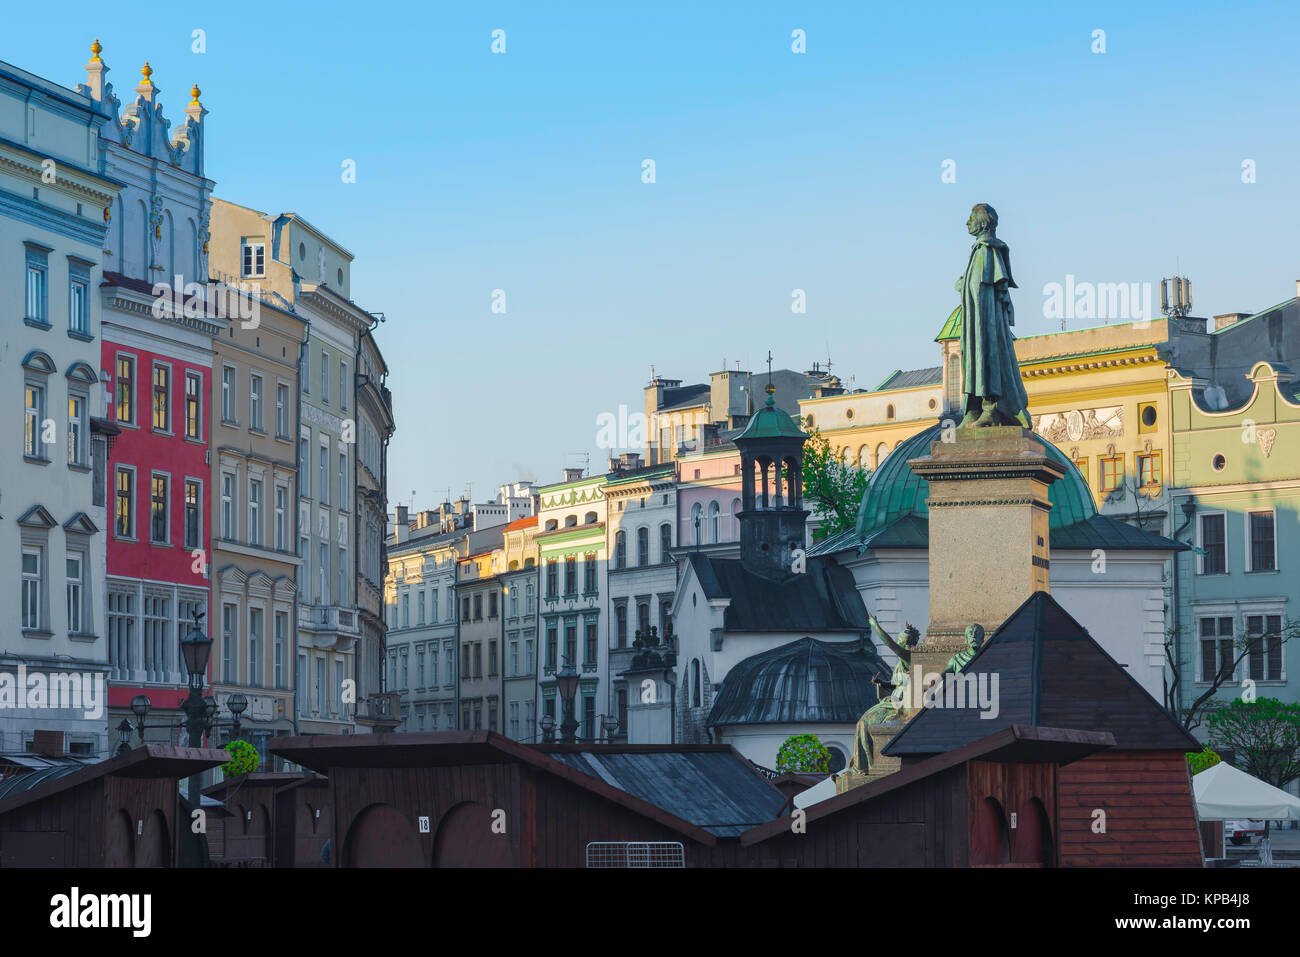 Polonia arquitectura barroca, vista de edificios Barrocos y Rococó en el lado sur de la plaza principal en el centro de Cracovia, Polonia. Foto de stock